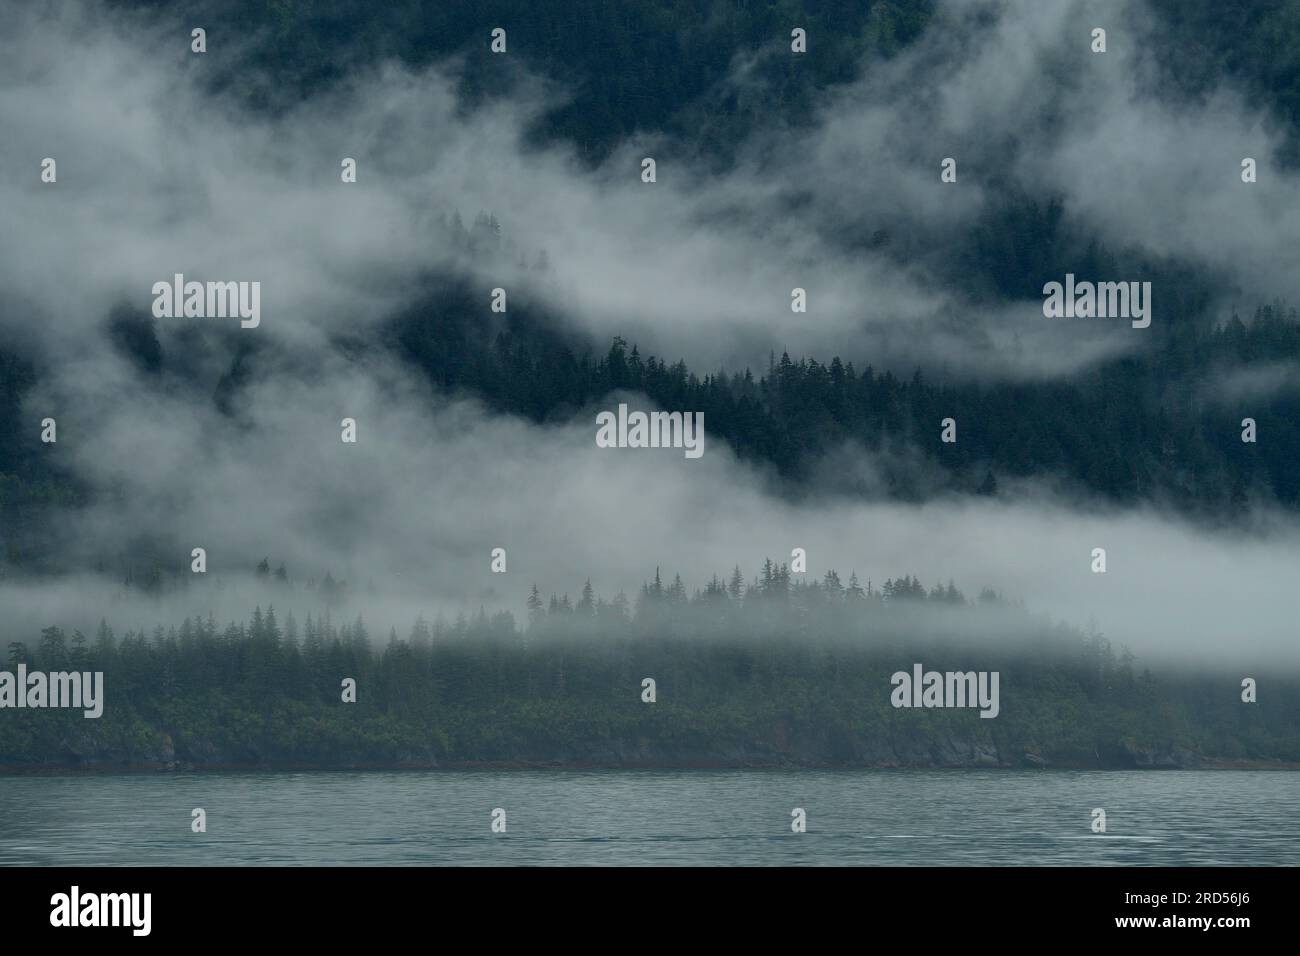 Il vento occidentale spinge le nuvole contro i ripidi pendii delle montagne Chugach, l'umidità nutre la foresta pluviale, Prince William Sound Foto Stock